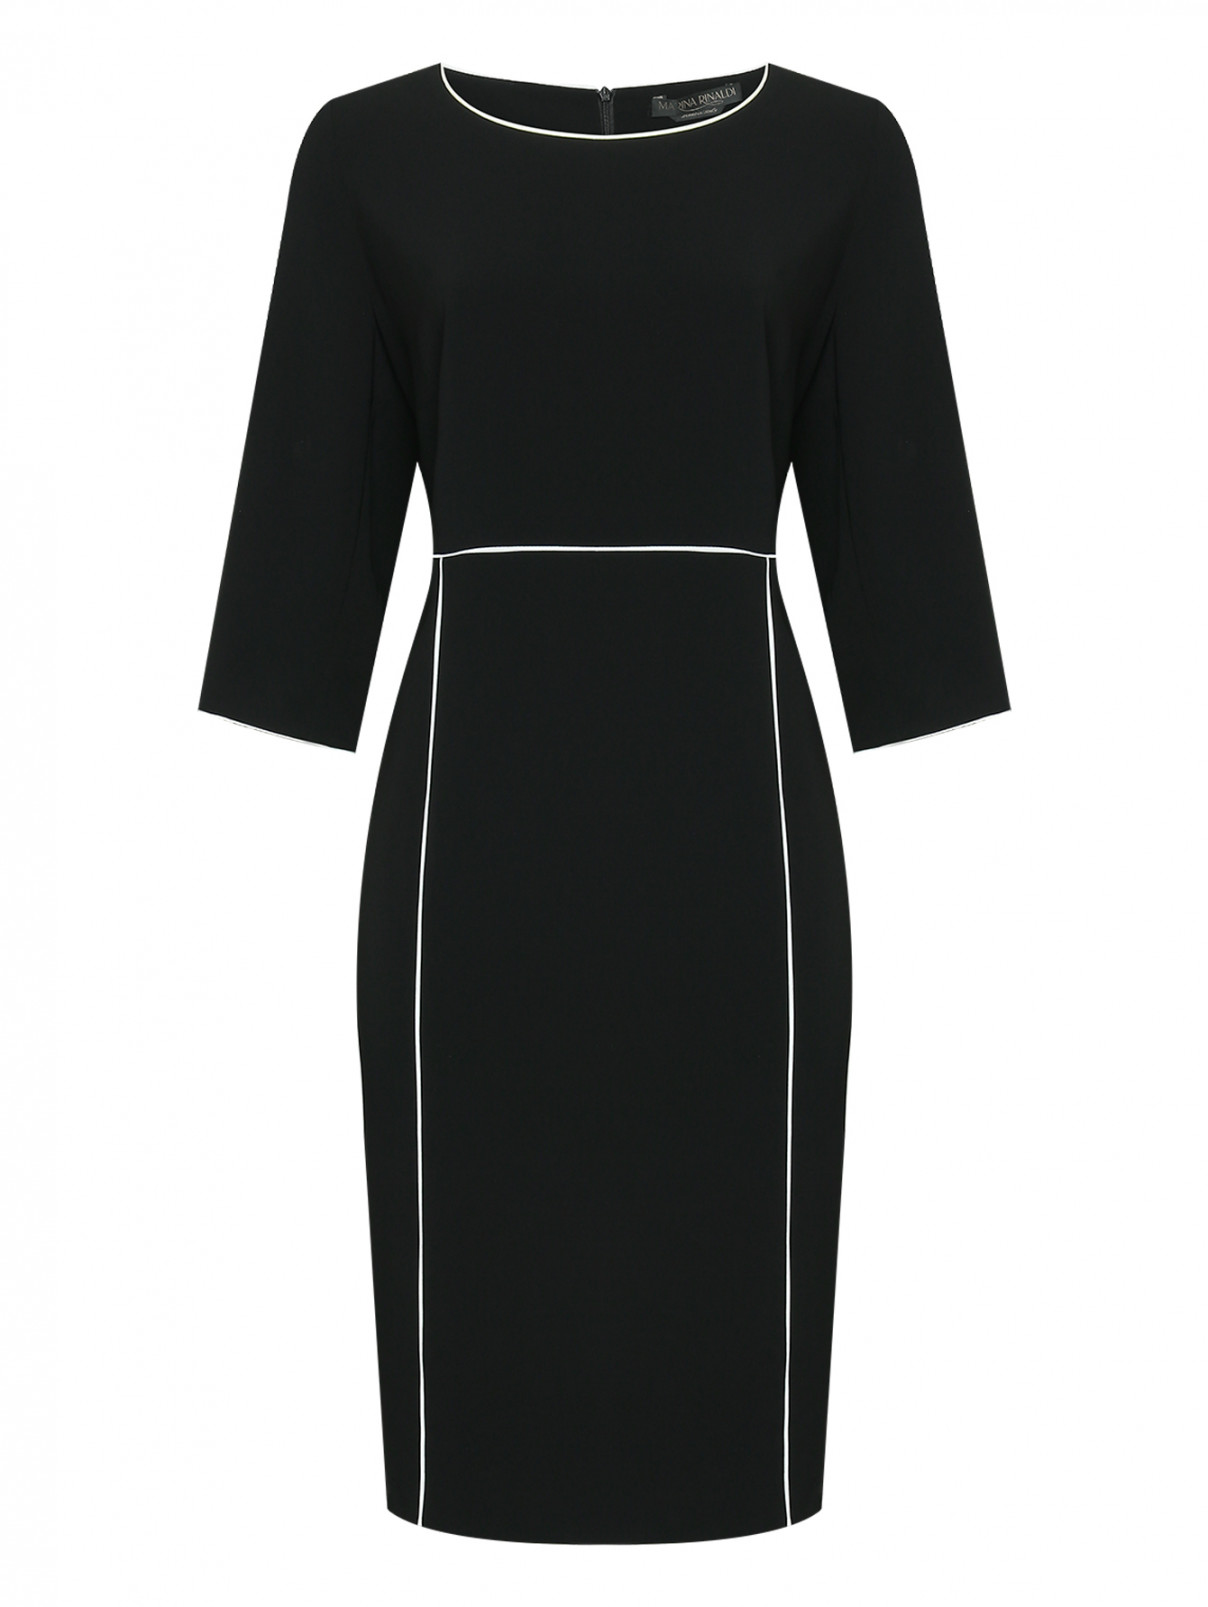 Платье с контрастной окантовкой Marina Rinaldi  –  Общий вид  – Цвет:  Черный